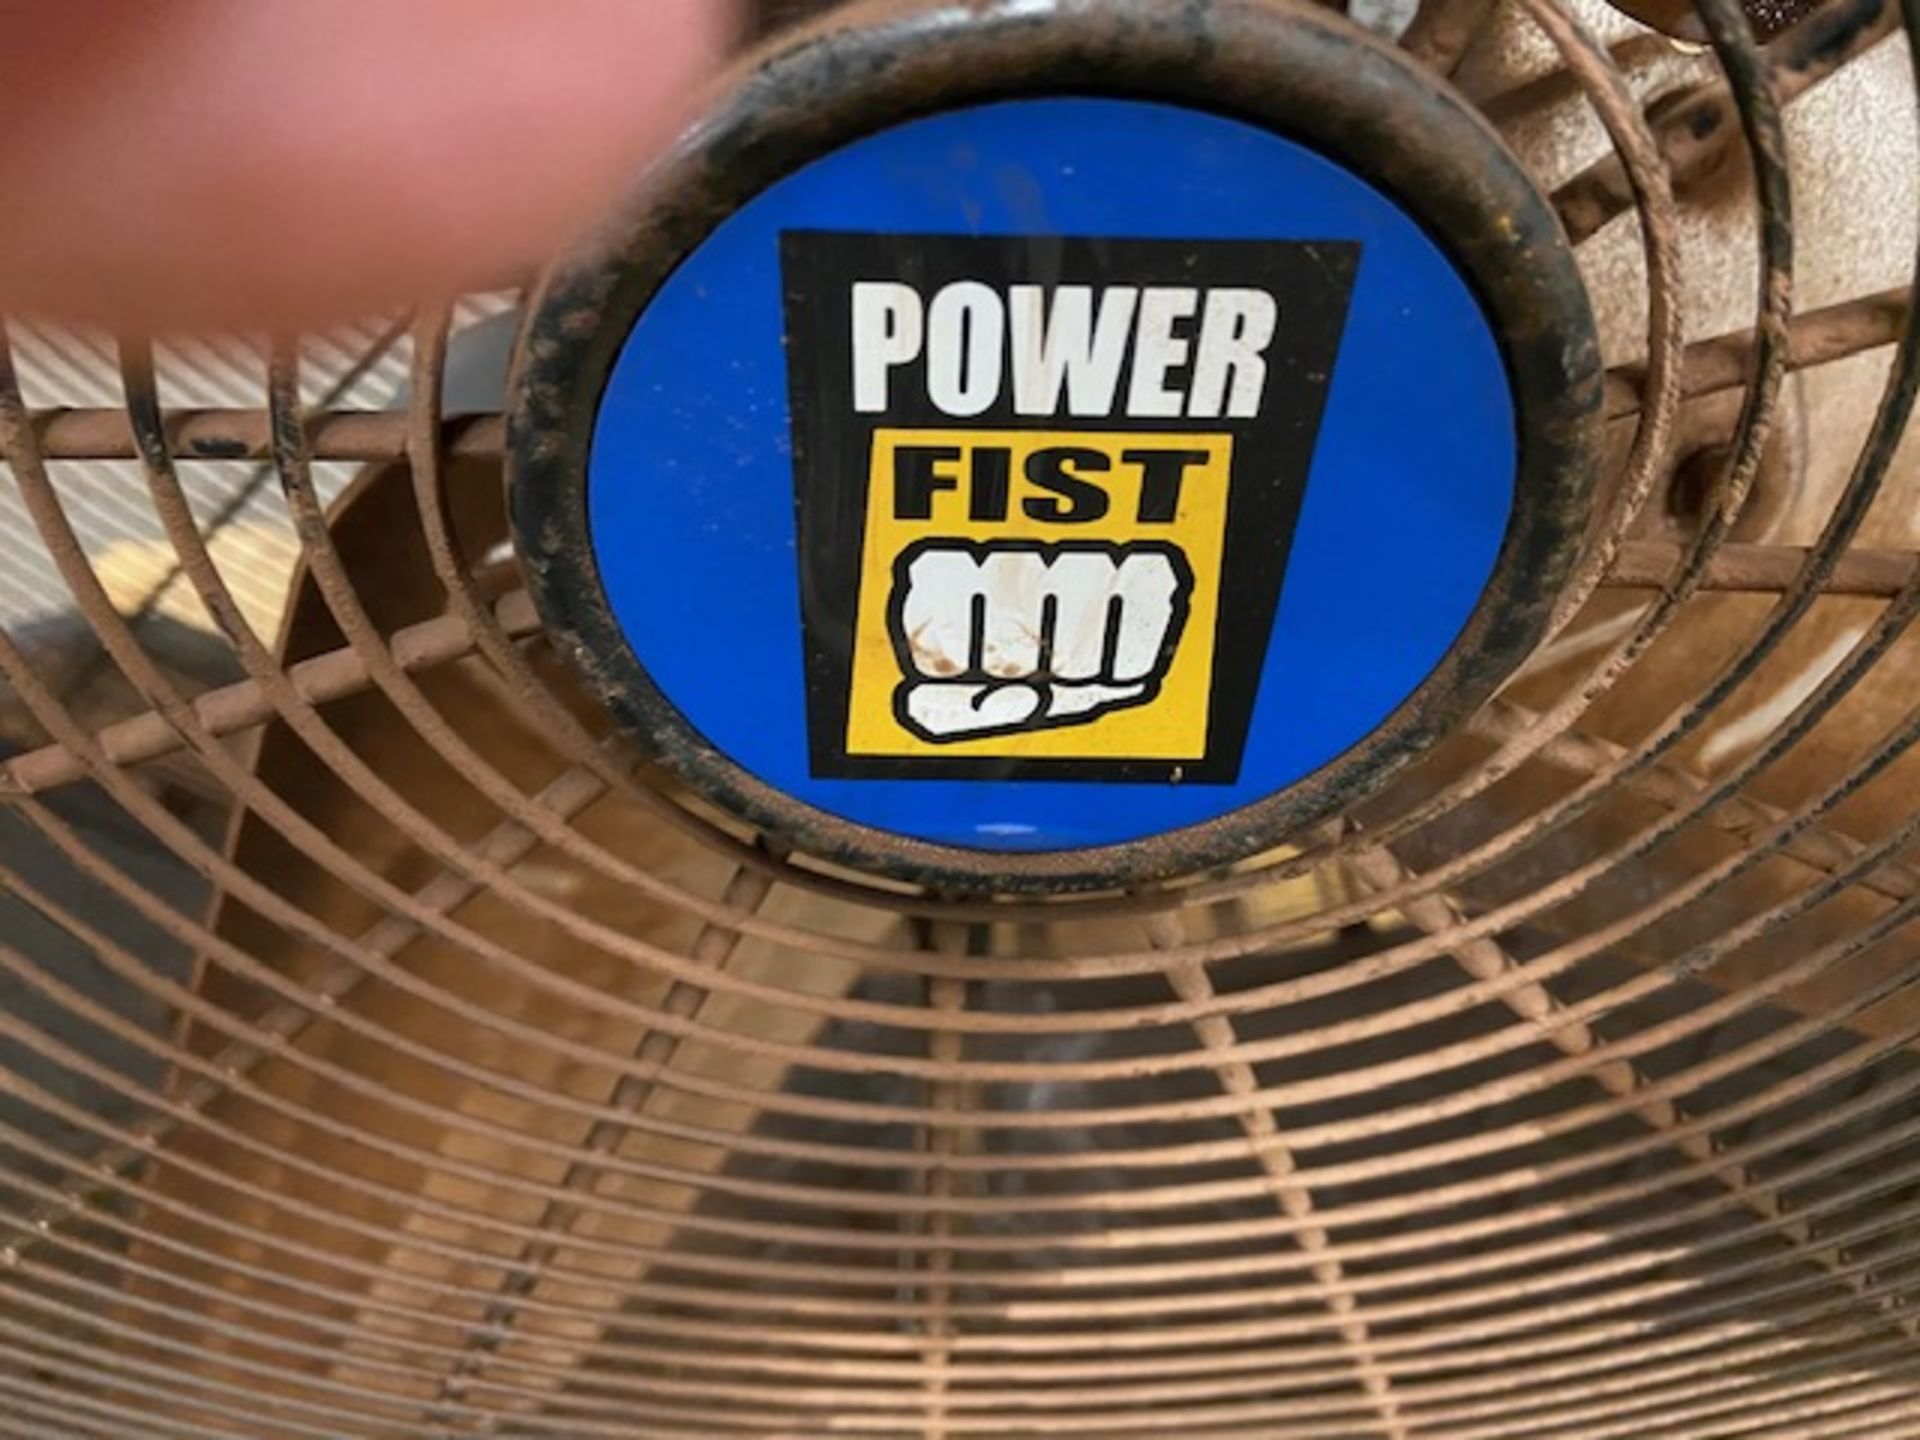 Powerfist 44" Shop Fan Unit - Image 2 of 2